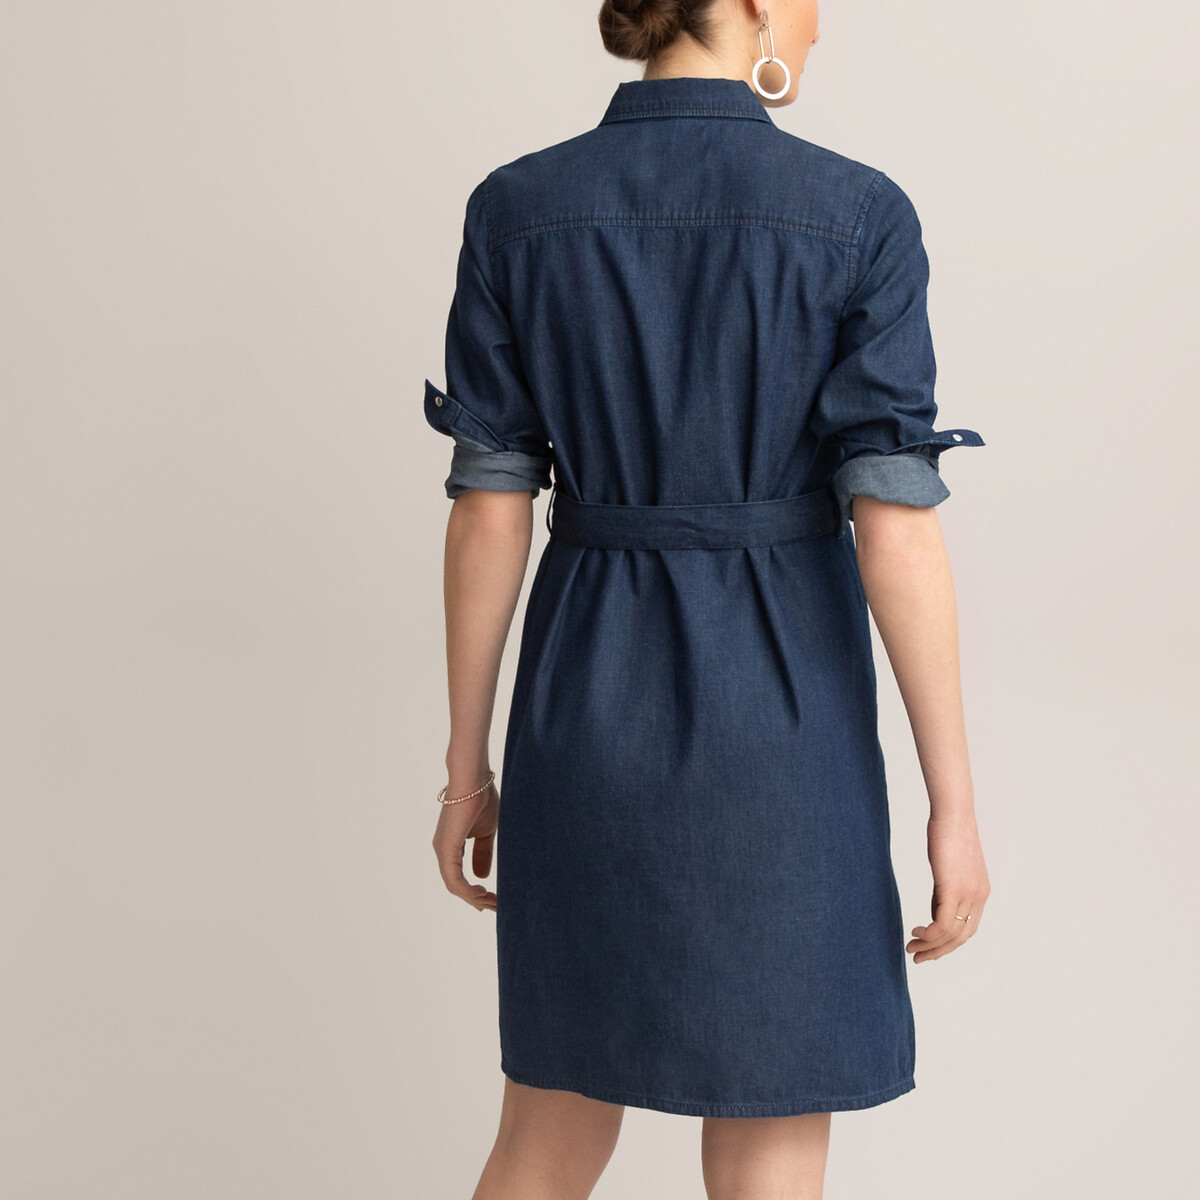 Платье-рубашка LaRedoute Для периода беременности из легкой джинсовой ткани 44 (FR) - 50 (RUS) синий, размер 44 (FR) - 50 (RUS) Для периода беременности из легкой джинсовой ткани 44 (FR) - 50 (RUS) синий - фото 4